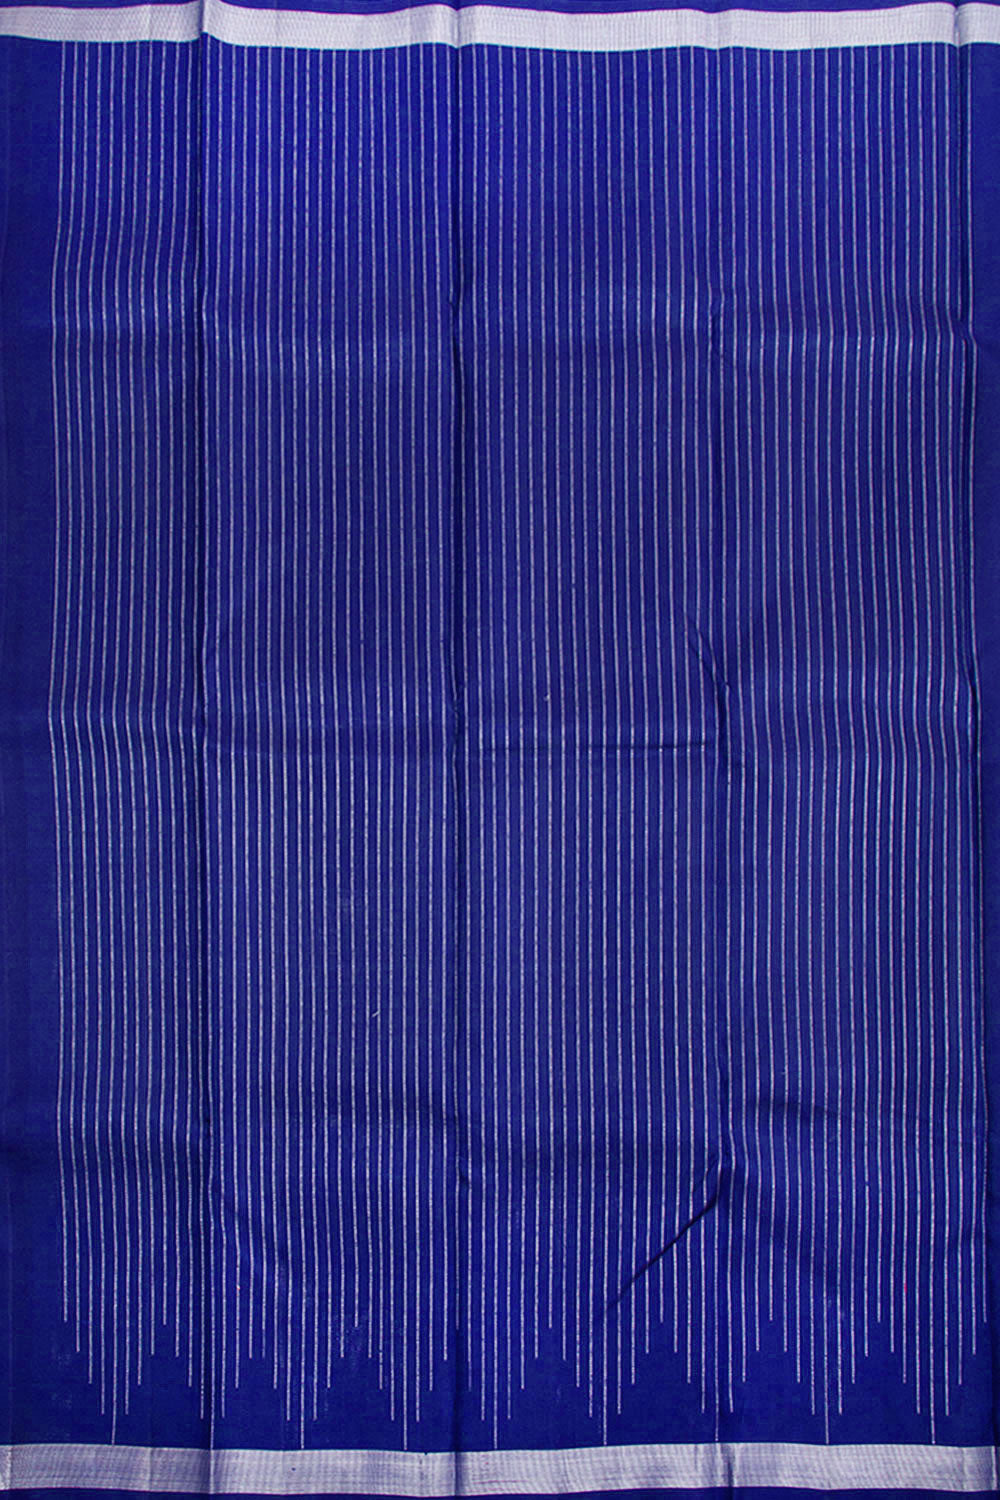 Sapphire Blue Pure Zari Kanjivaram Silk Saree 10062465